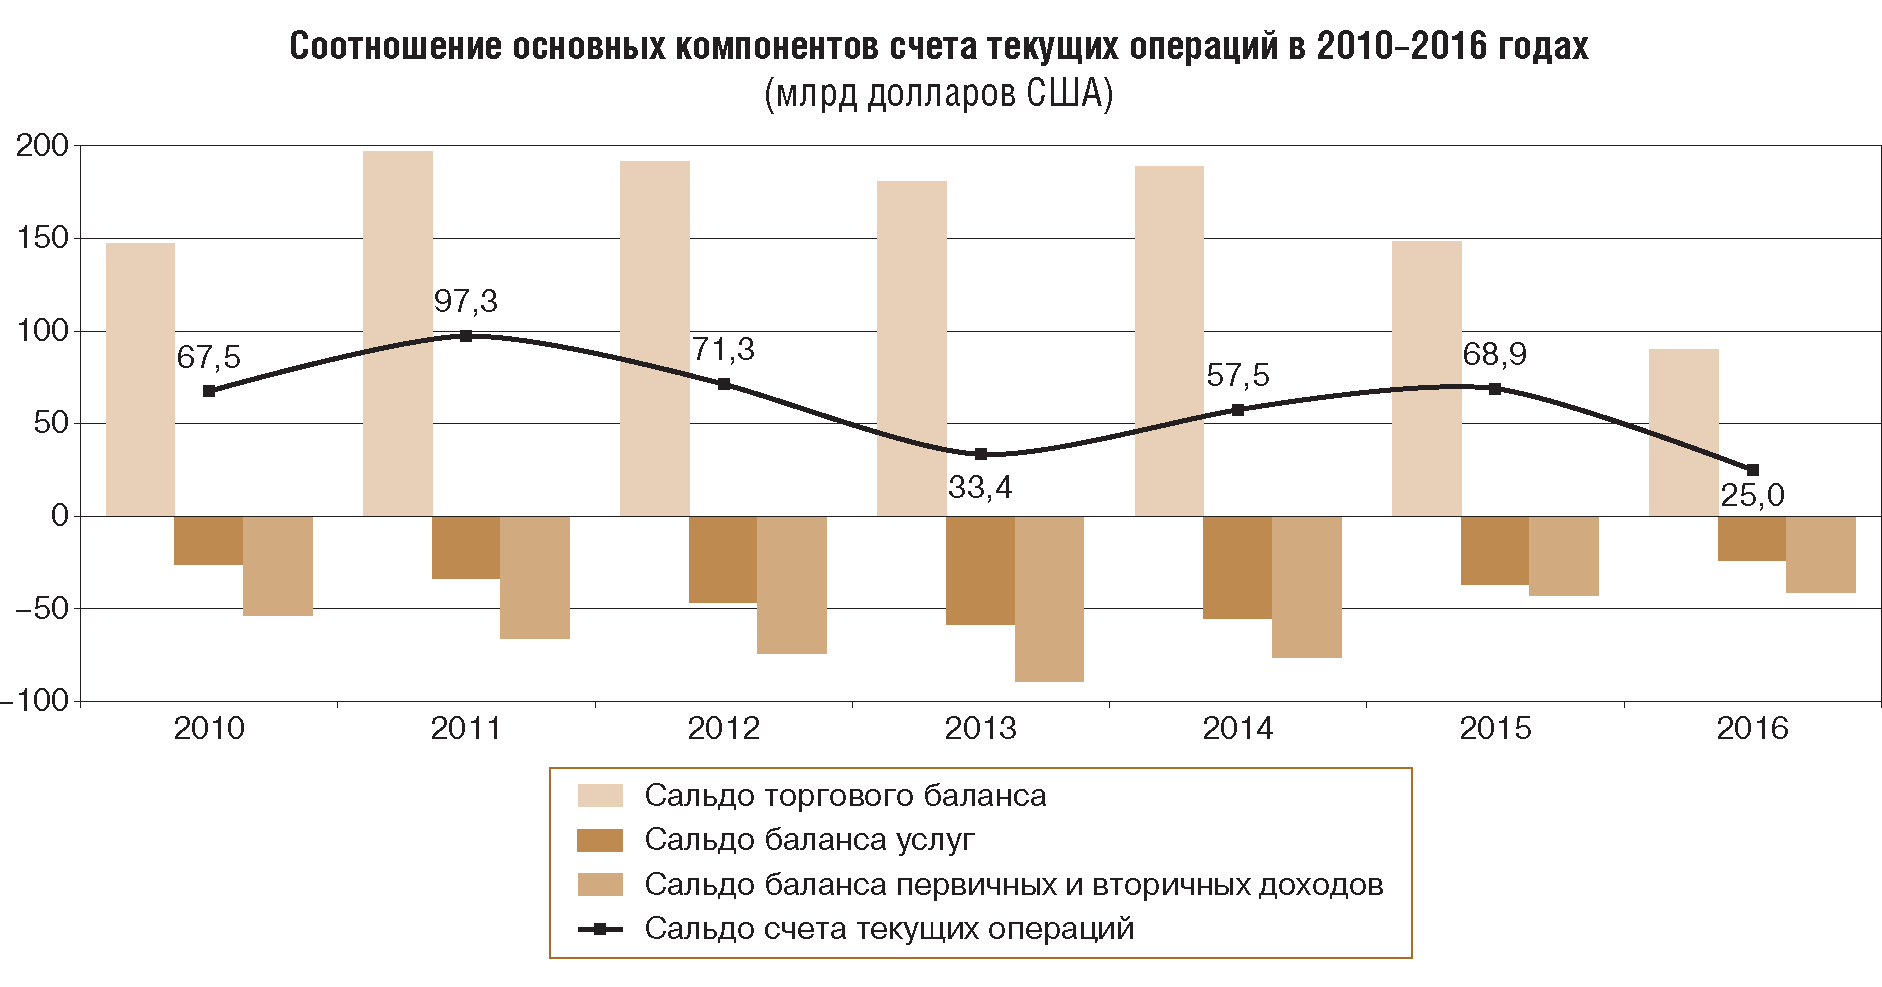 Платежный баланс, международная инвестиционная позиция и внешний долг  Российской Федерации 2016 год